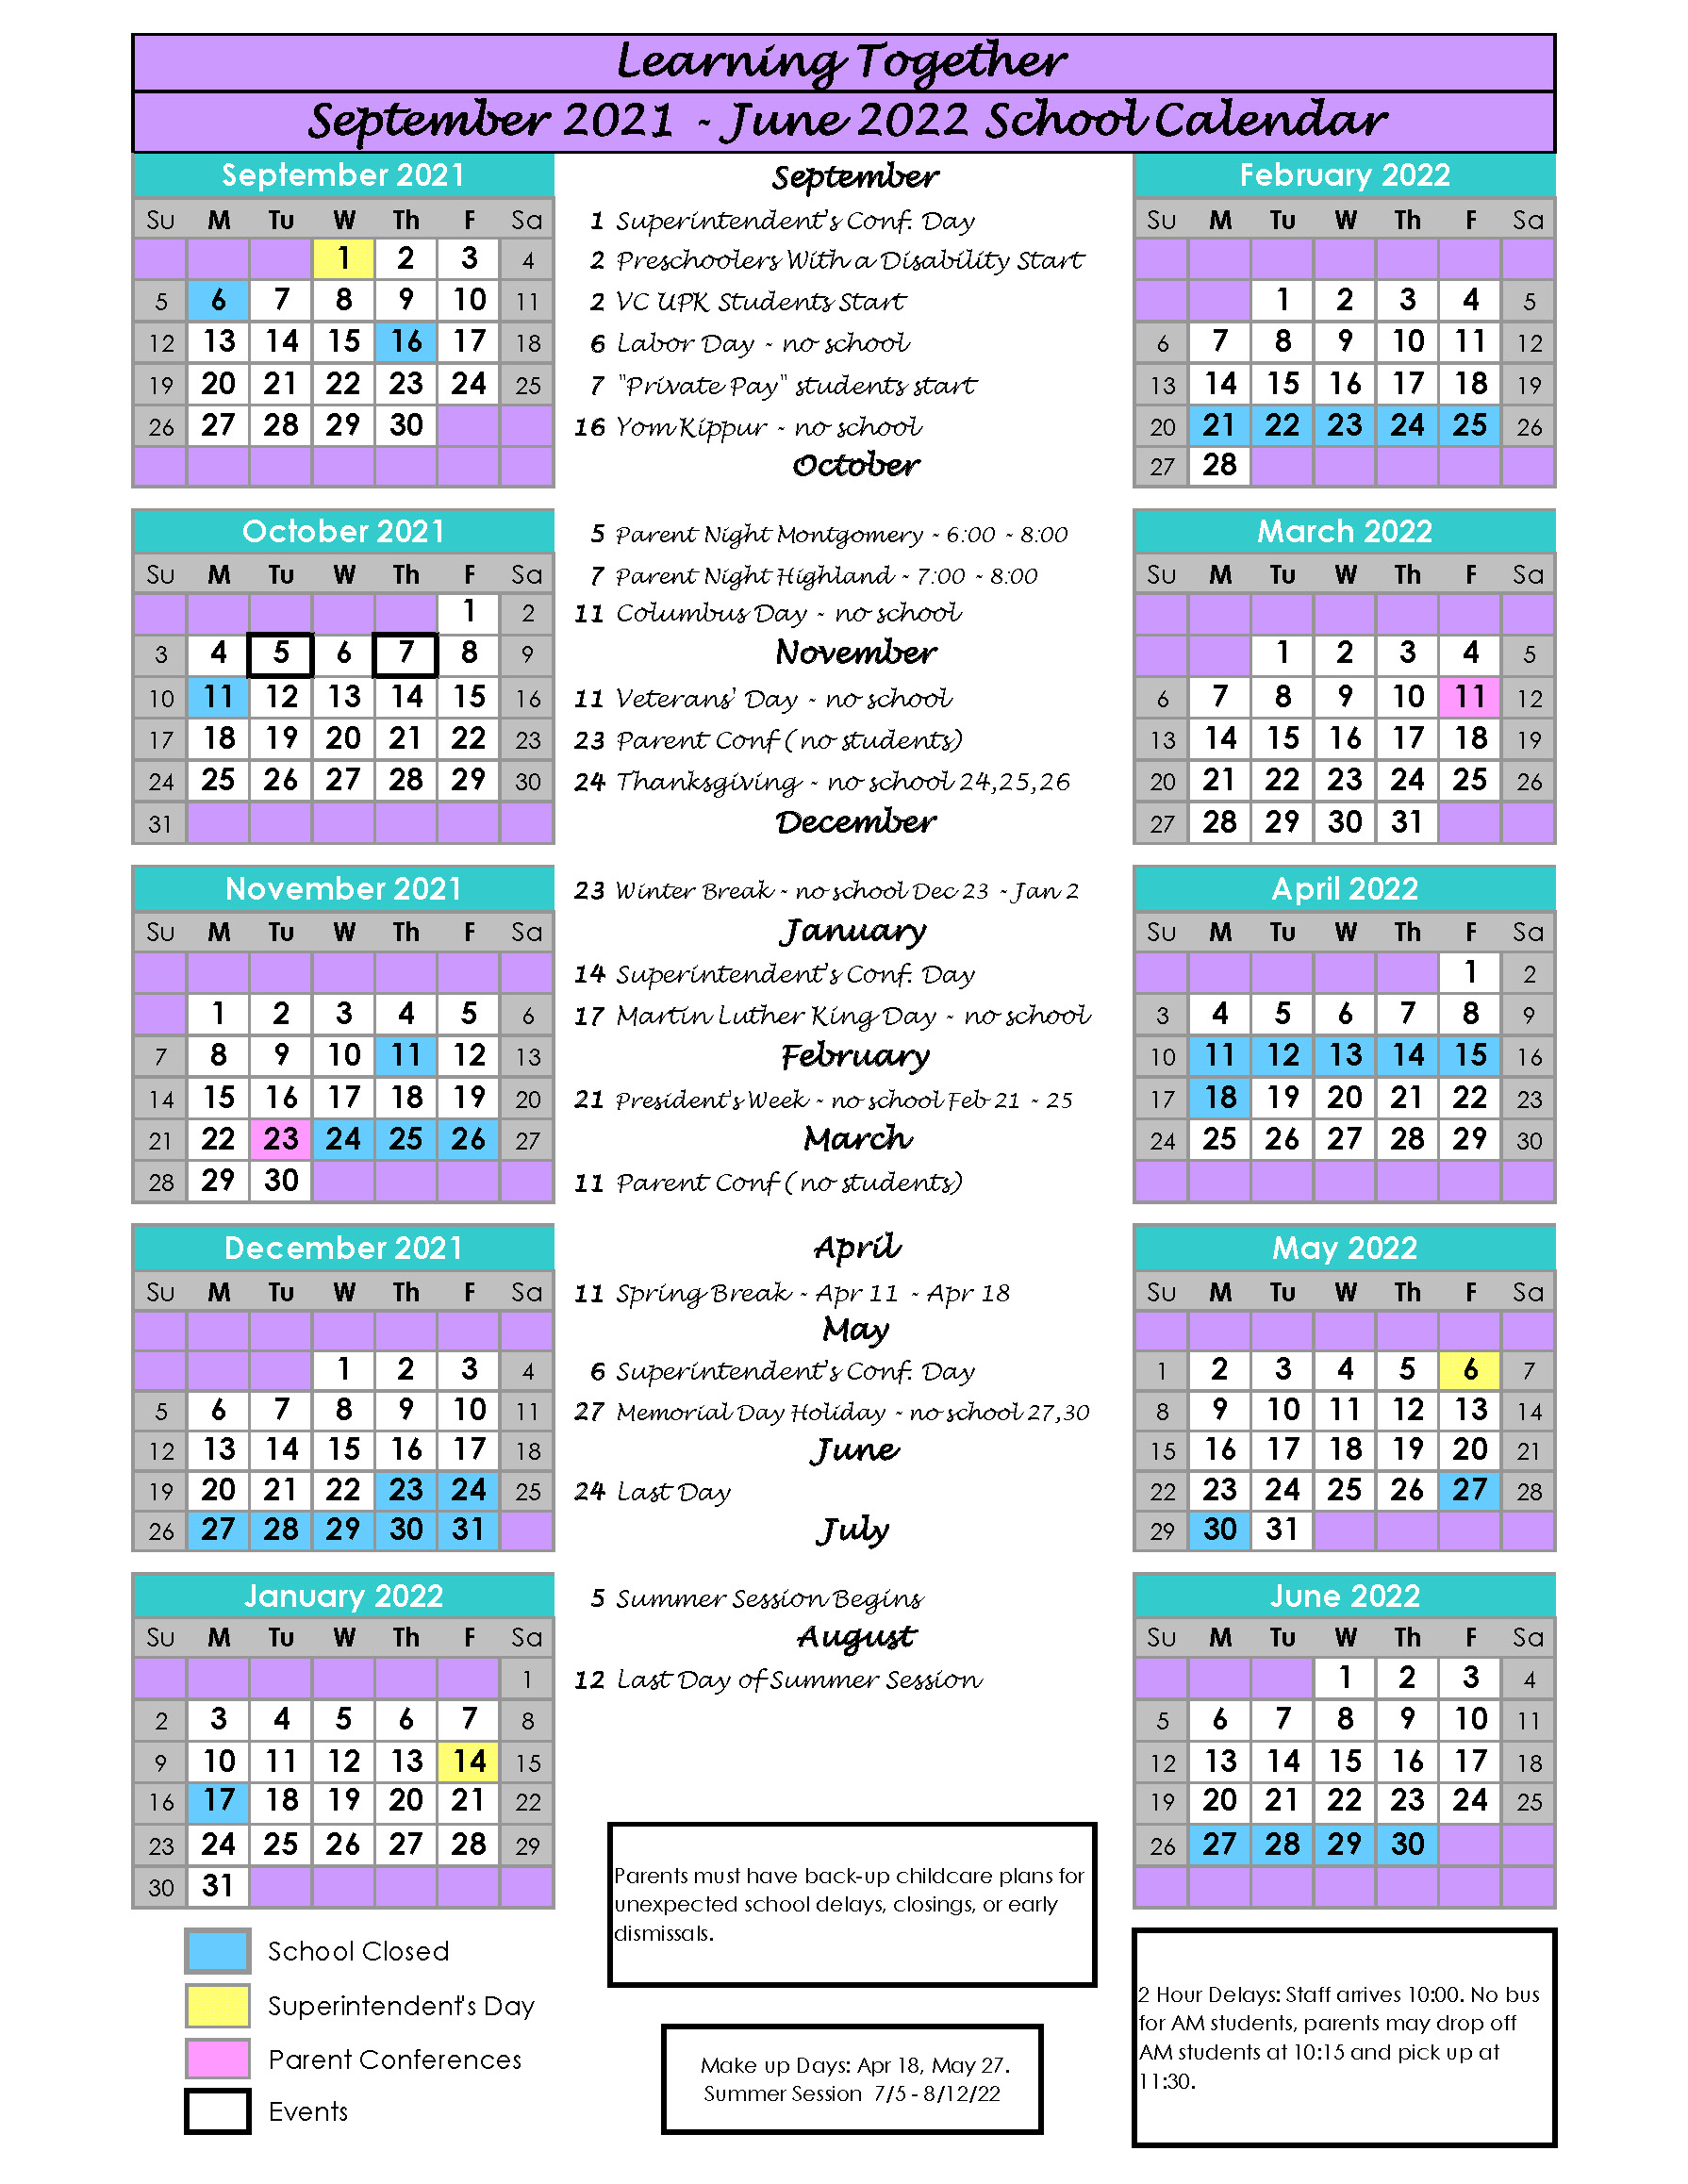 Learning Together 2021-2022 Calendar